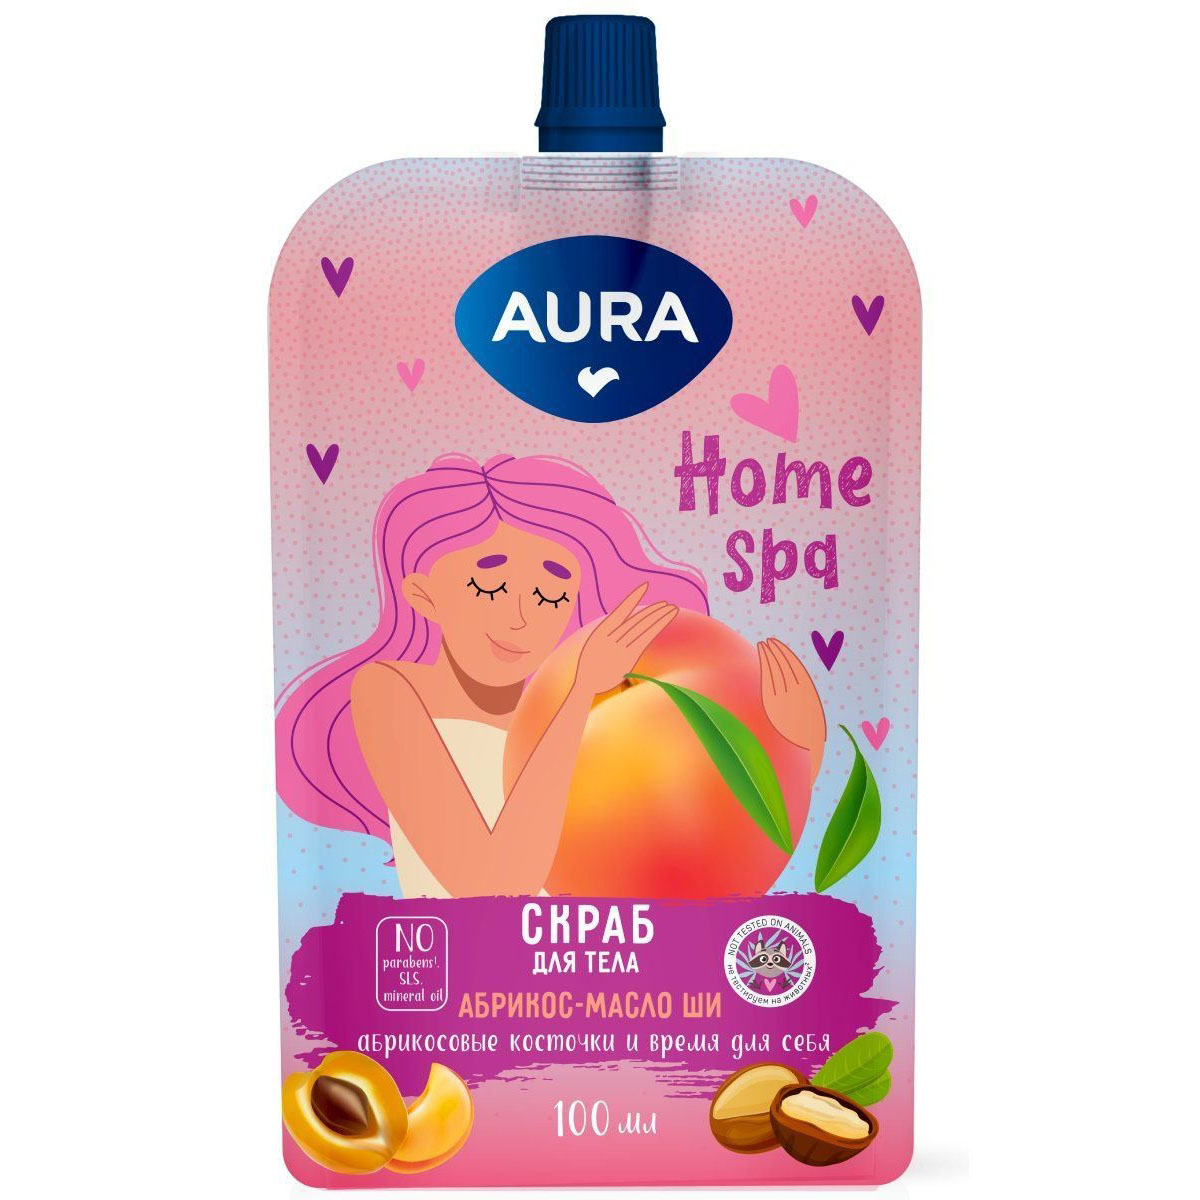 Aura Скраб для тела Абрикос и масло ши Home Spq, 100 мл (Aura, Beauty)